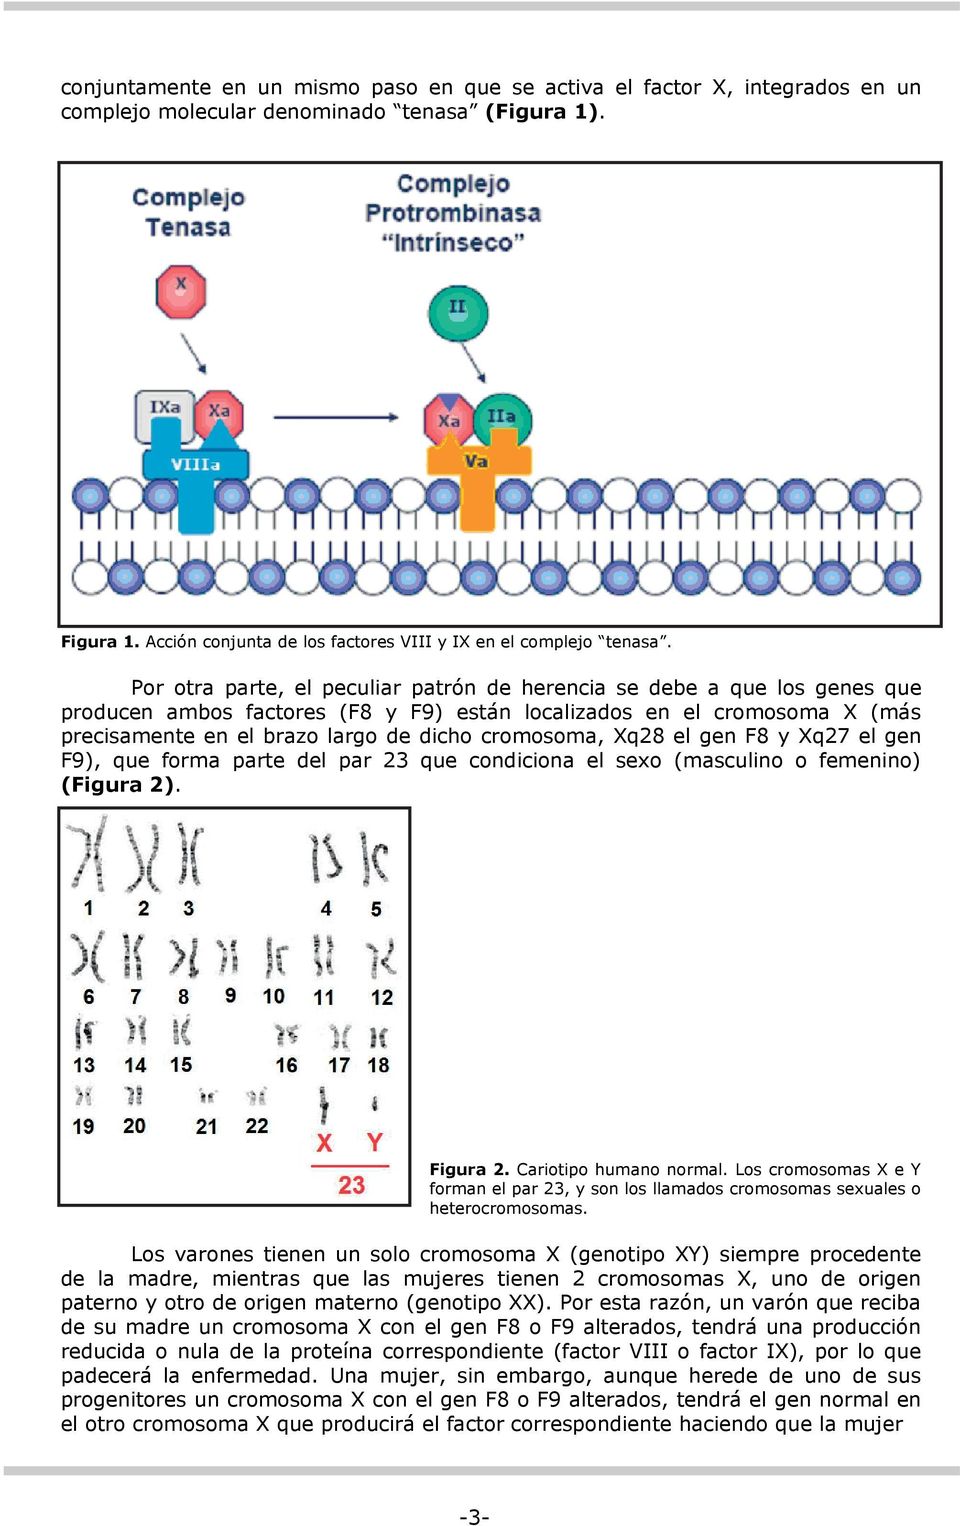 Por otra parte, el peculiar patrón de herencia se debe a que los genes que producen ambos factores (F8 y F9) están localizados en el cromosoma X (más precisamente en el brazo largo de dicho